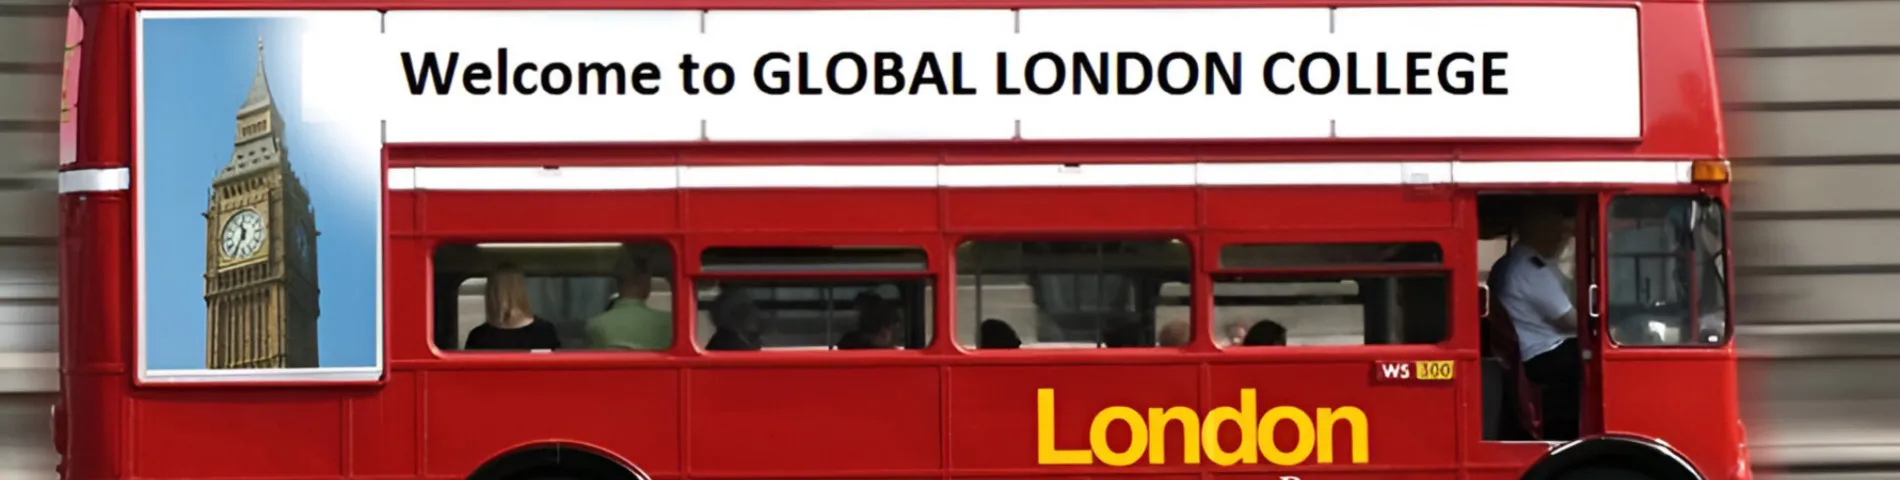 Global London College obrazek 1